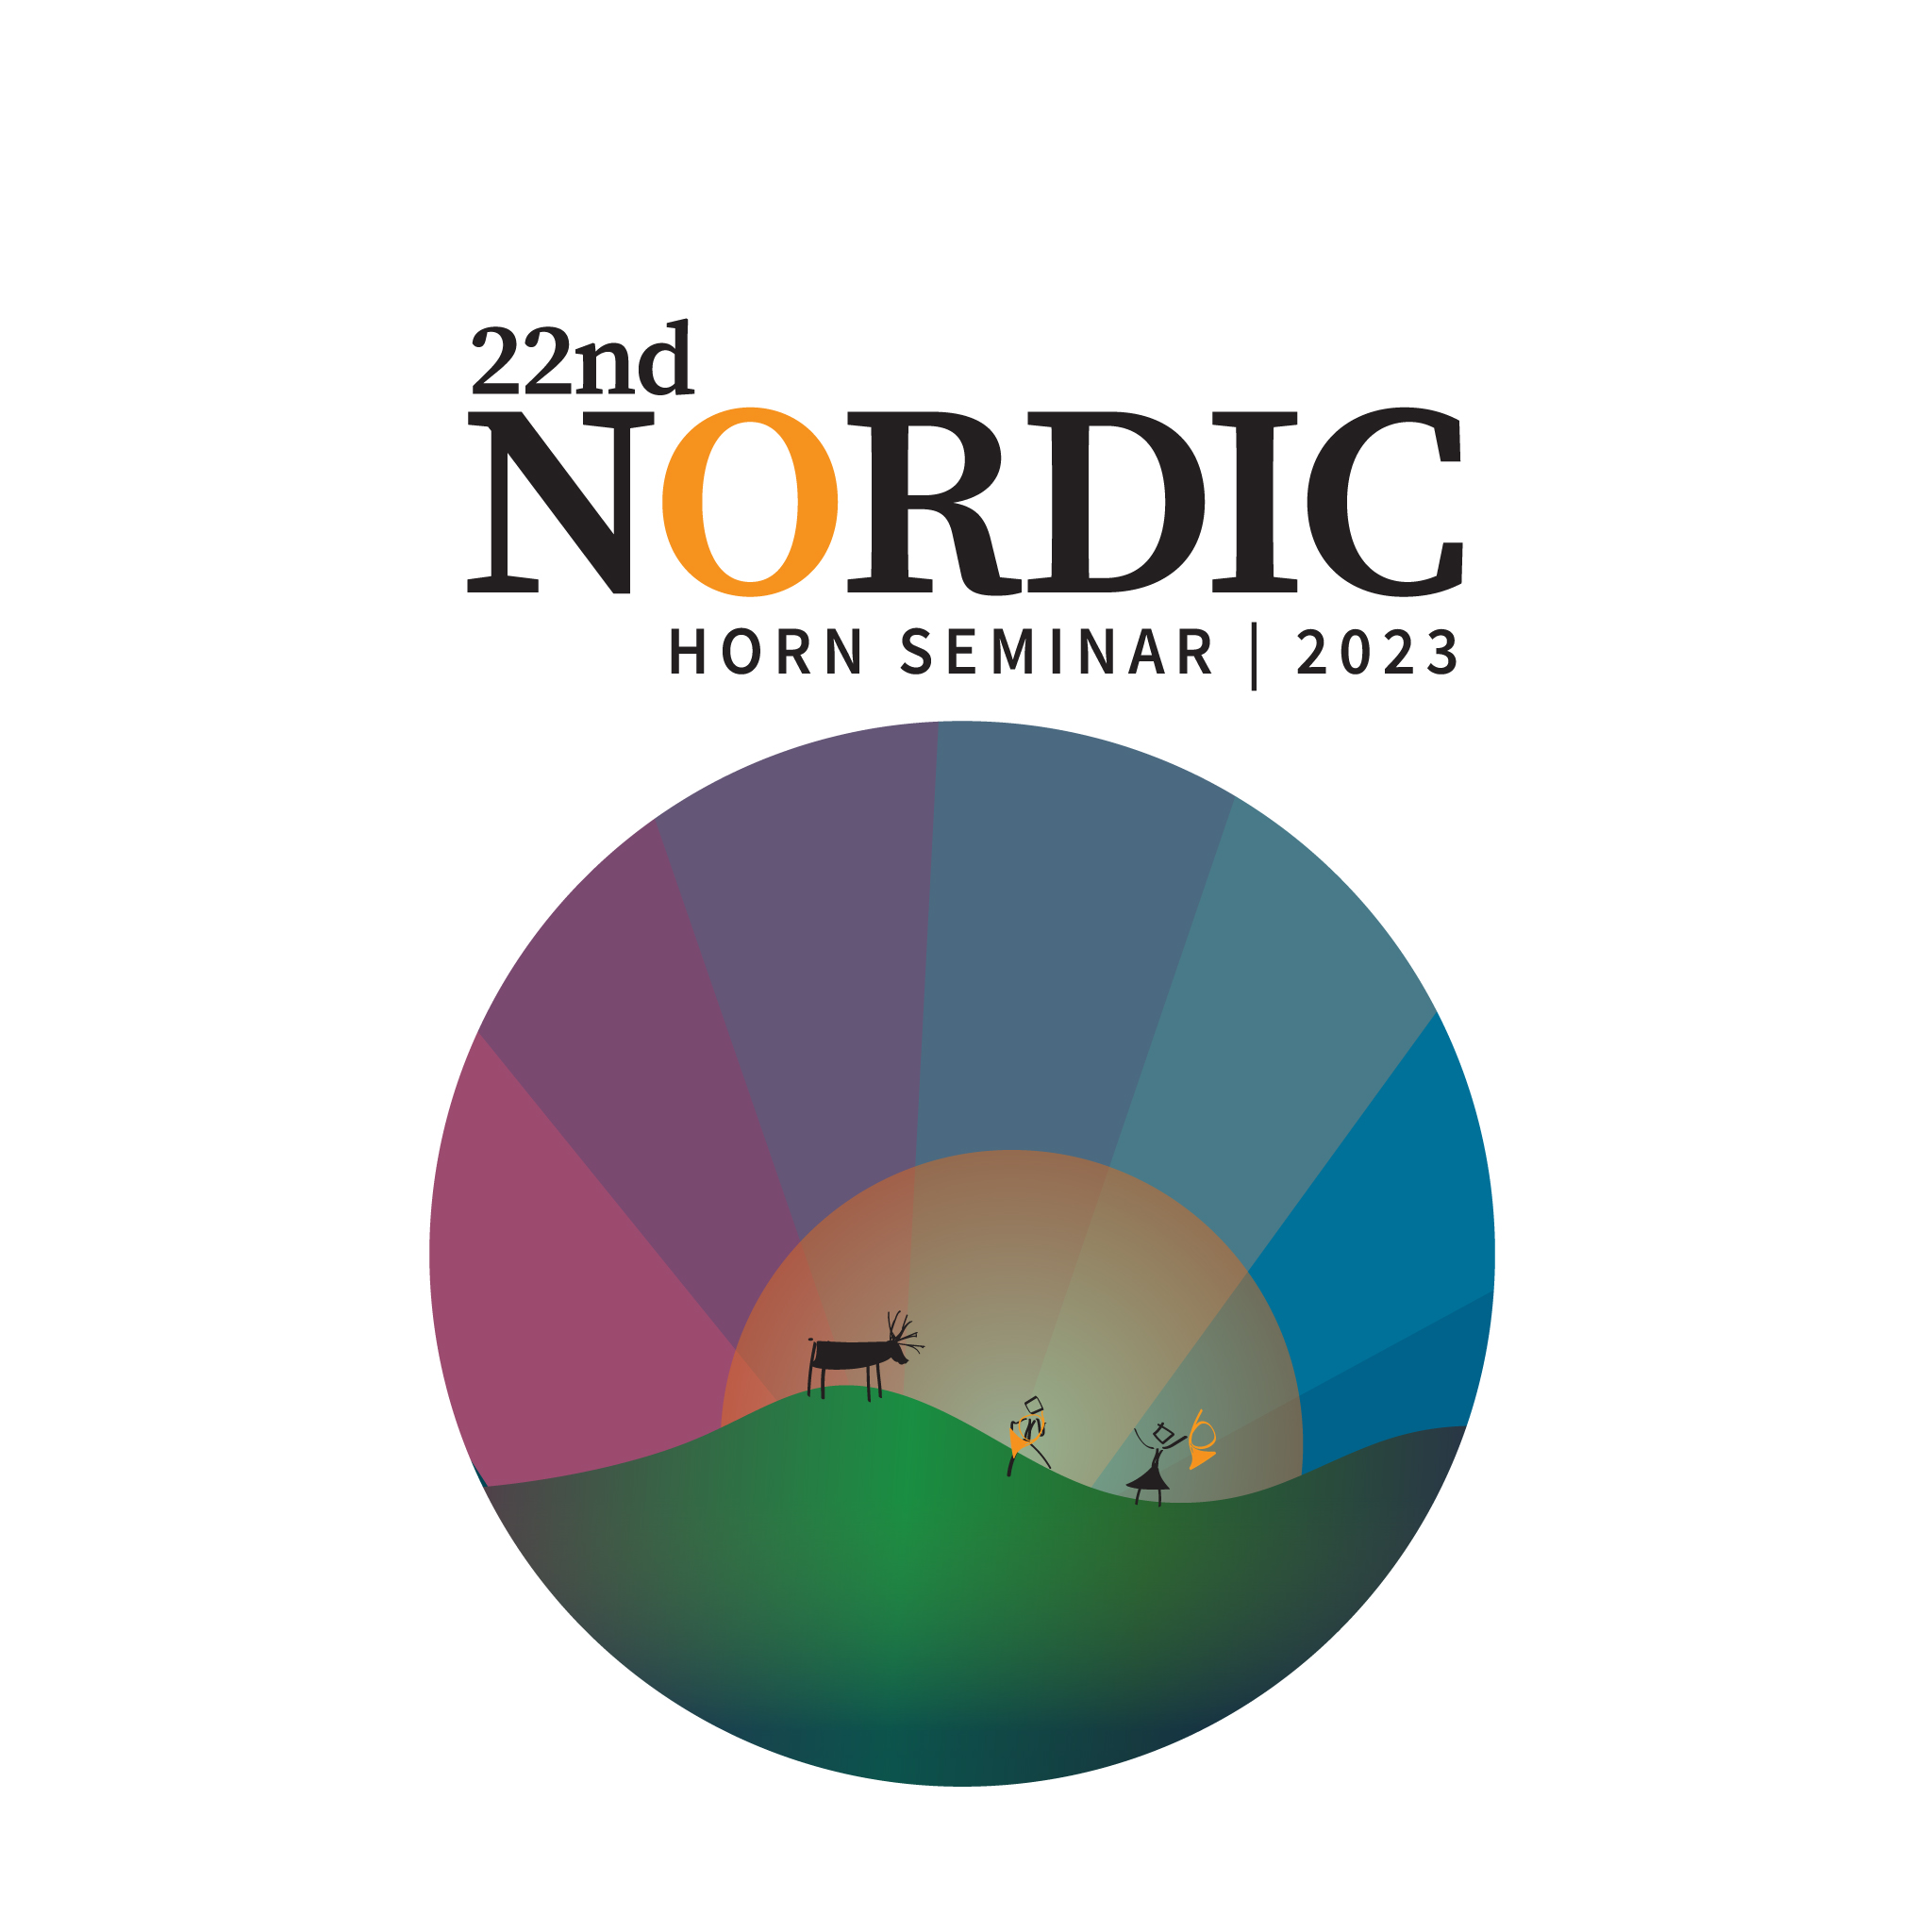 Nordic horn seminar 